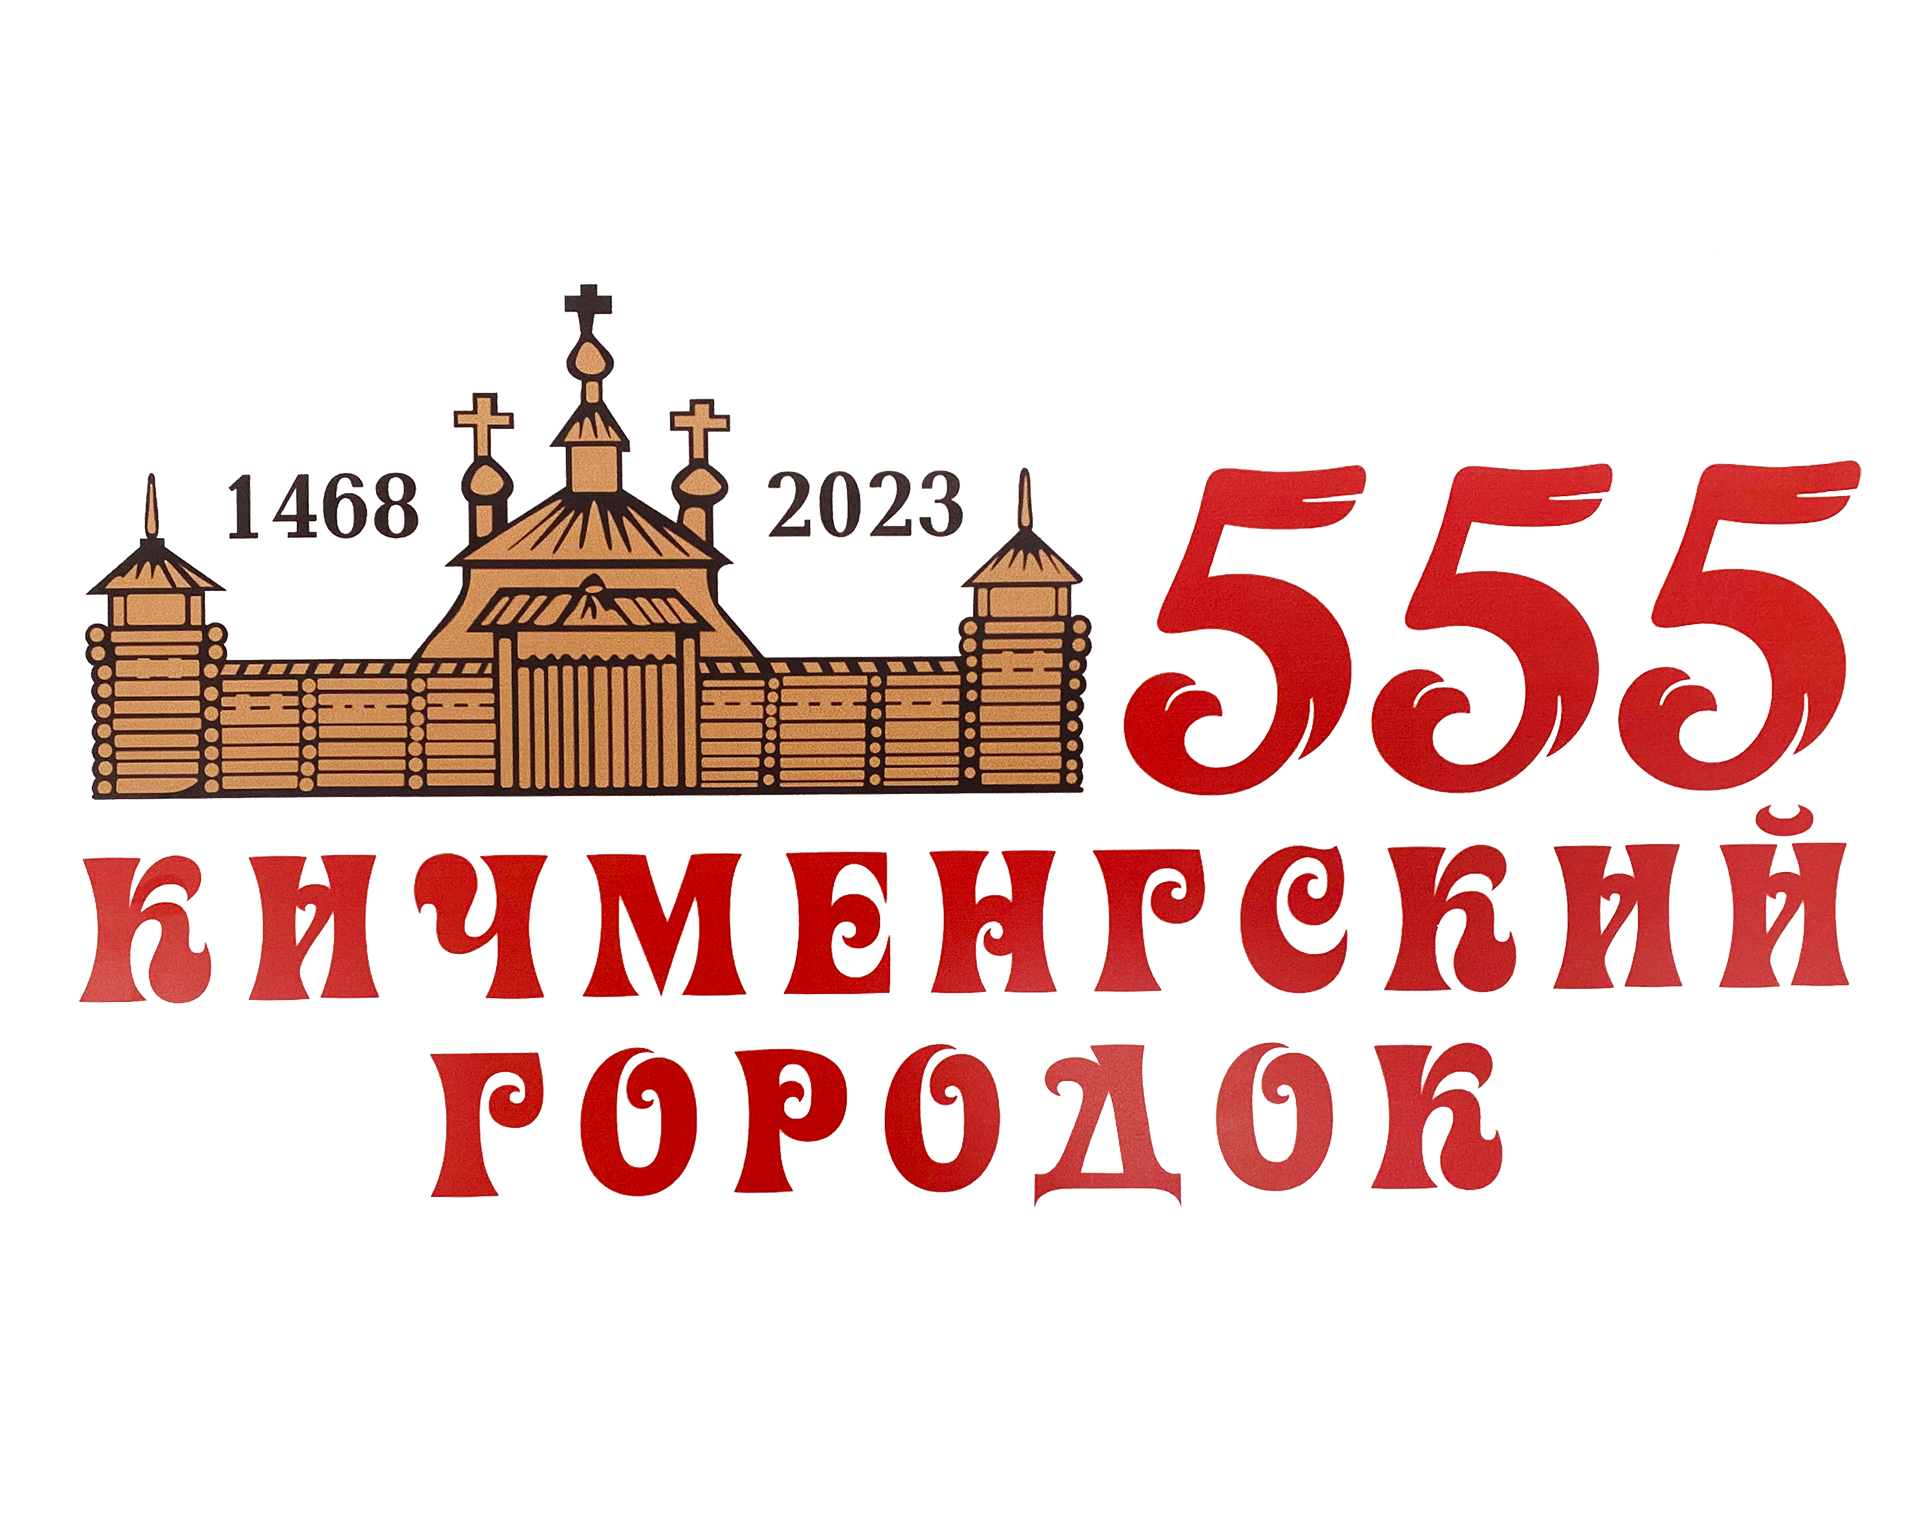 Программа праздничных мероприятий, посвященных 555-летию села Кичменгский Городок «Большой России славный Городок».